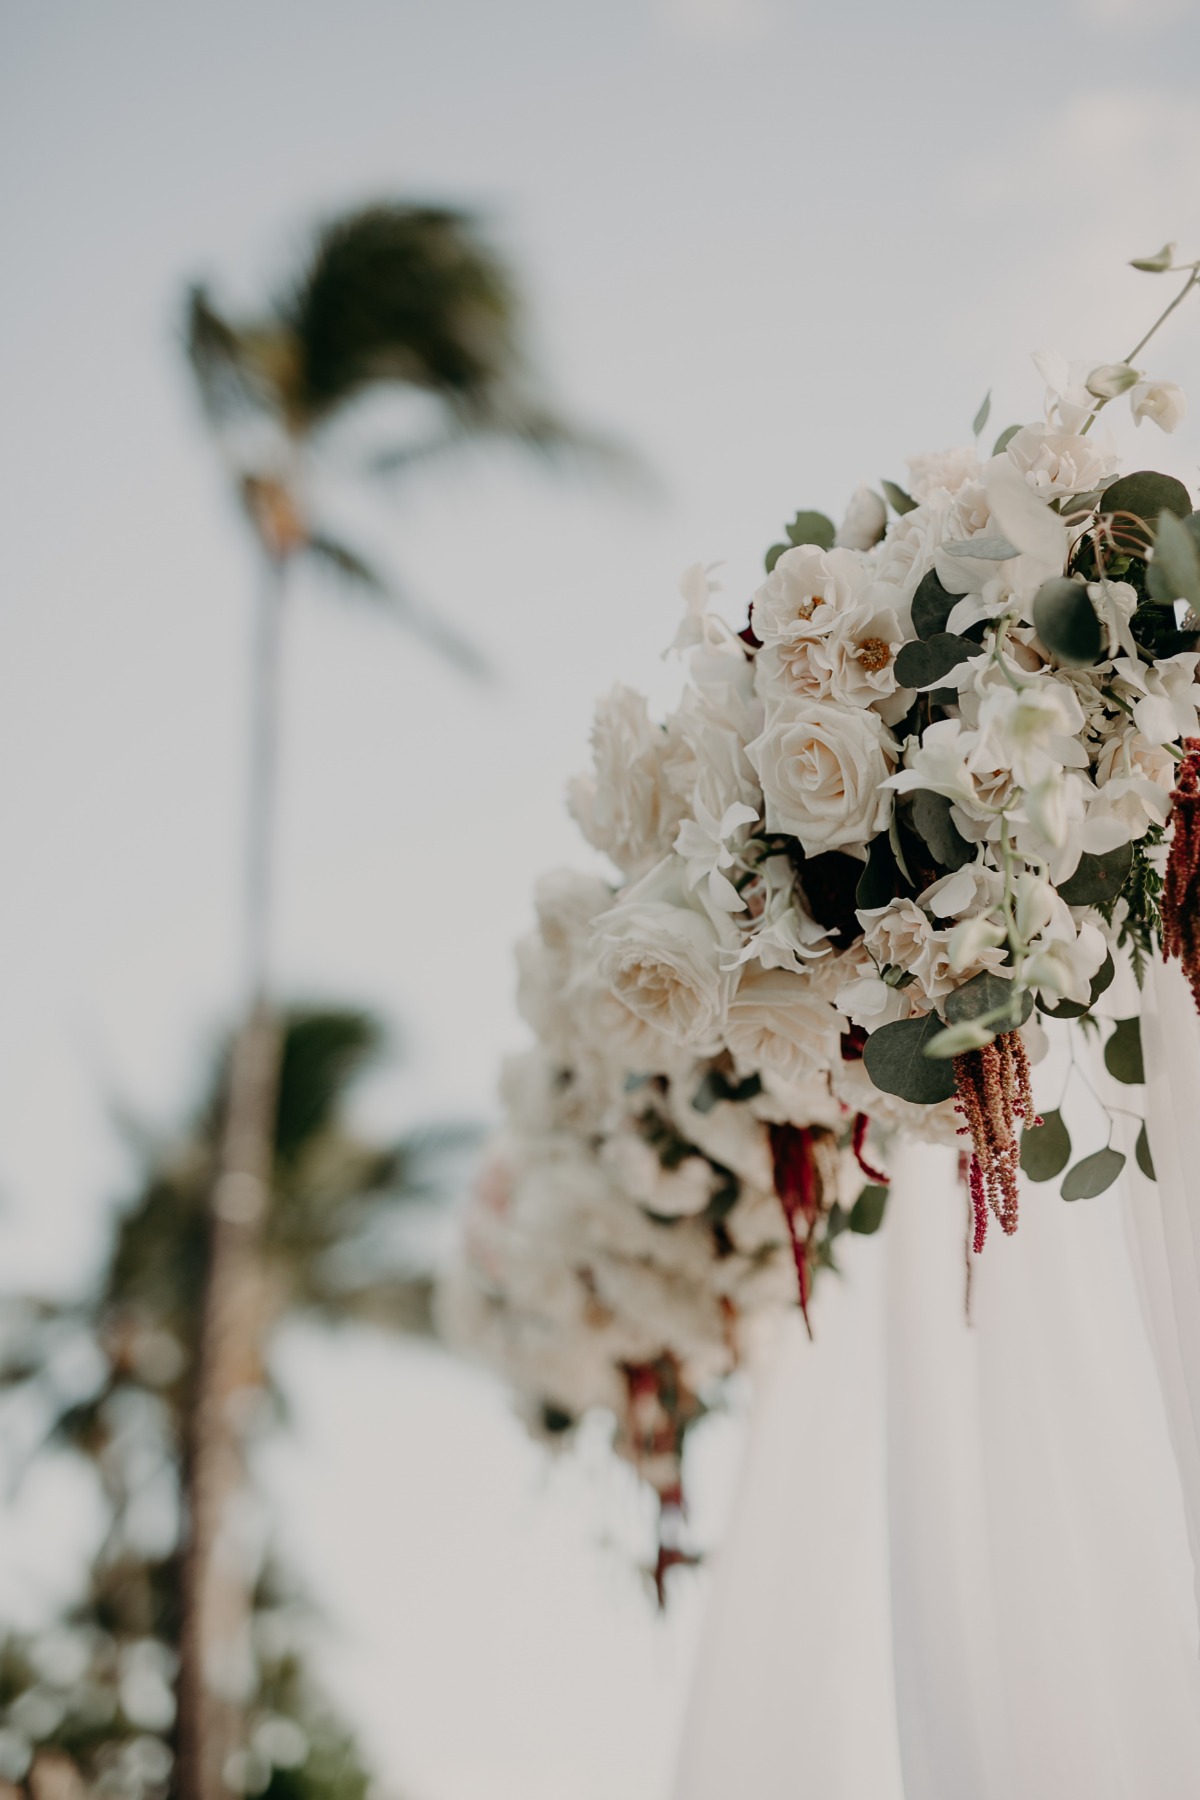 floral wedding ceremony backdrop